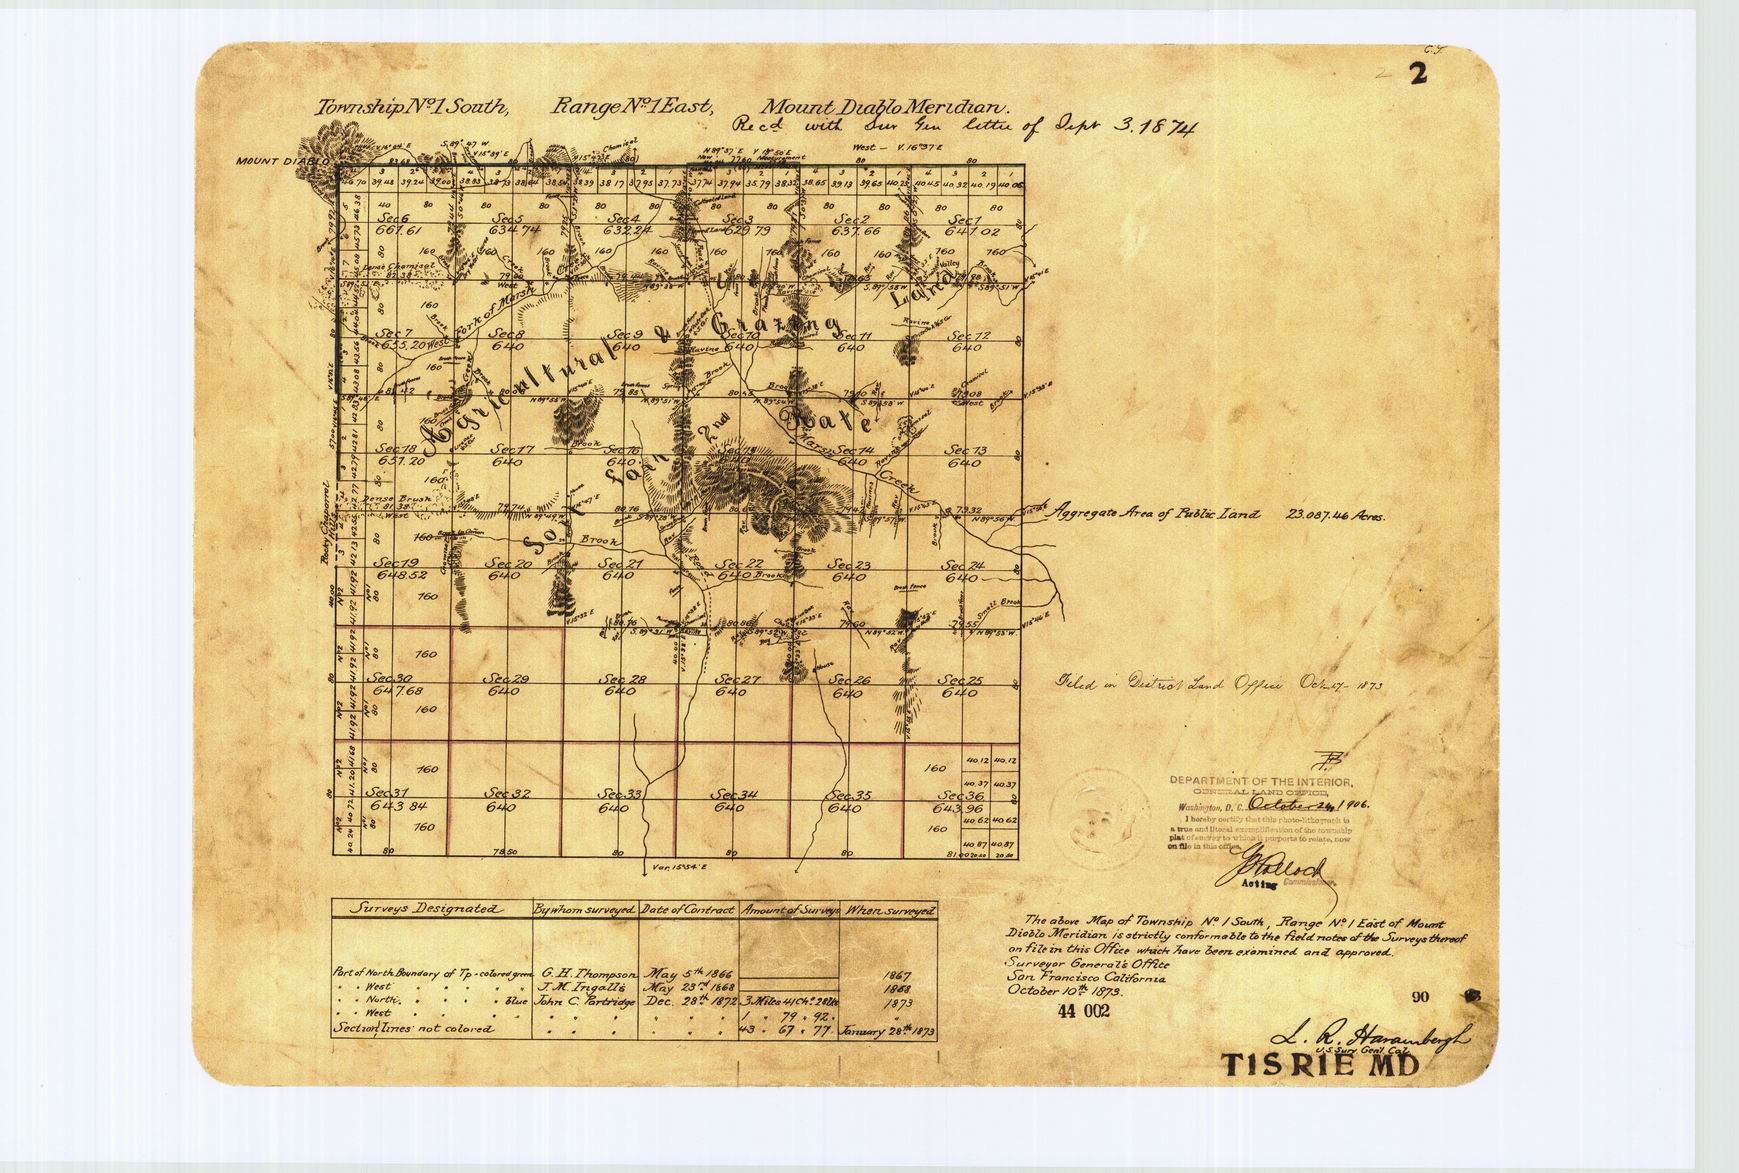 US Public Land Survey System - Original T1S R1E Mount Diablo Survey